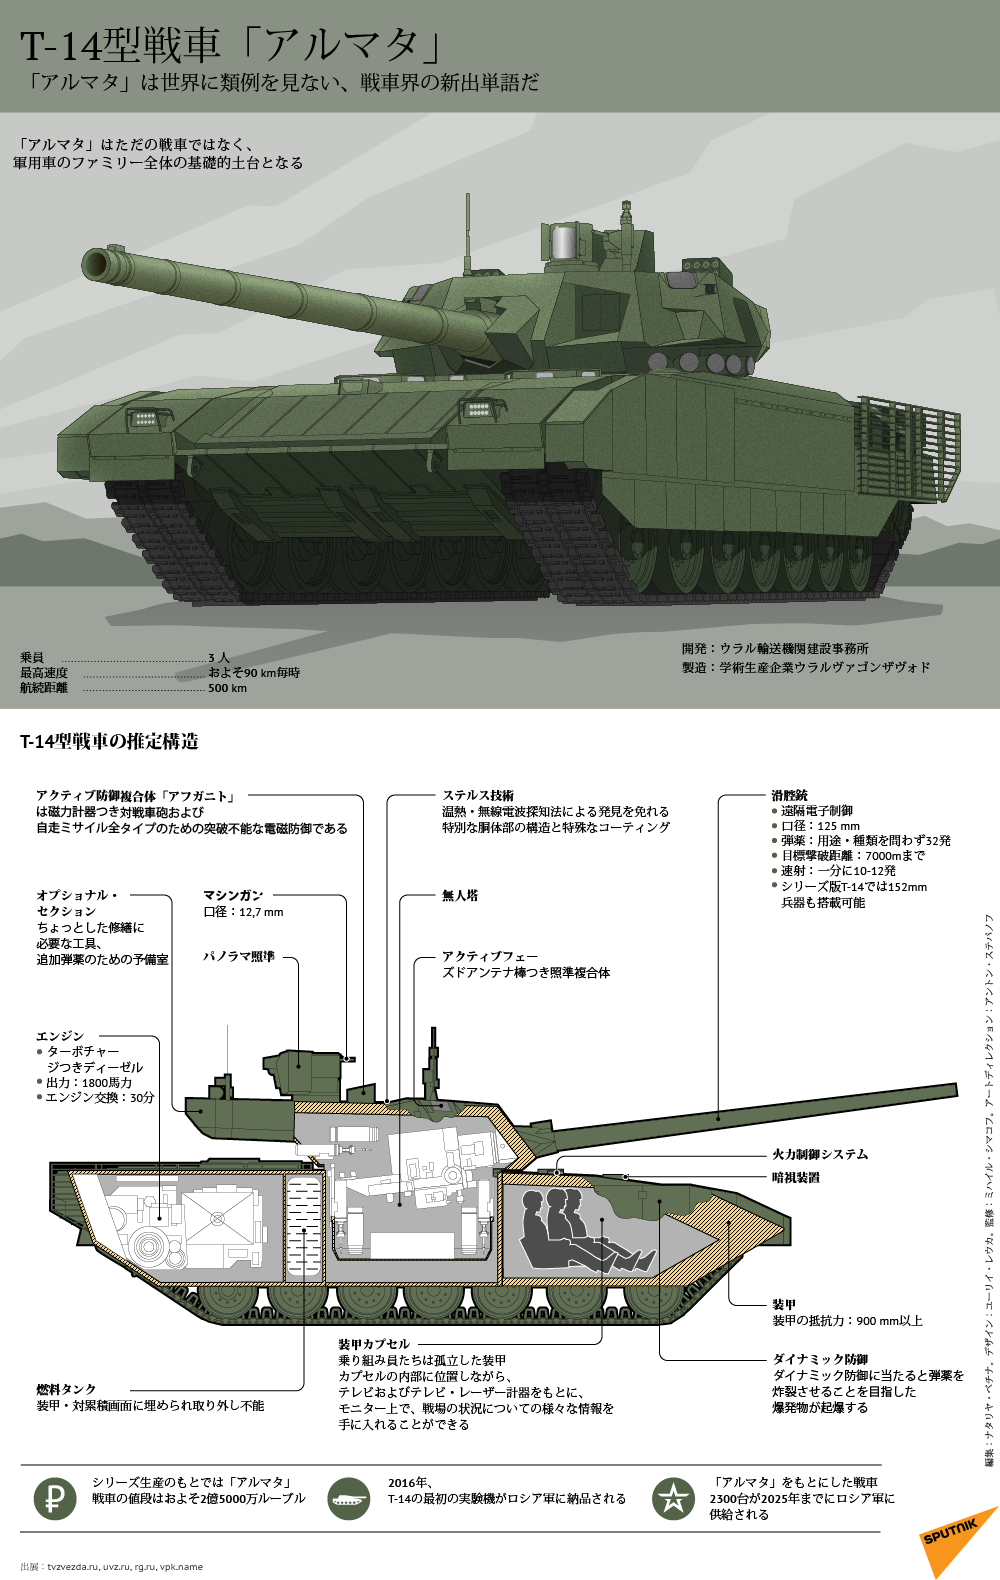 次世代T-14型戦車「アルマタ」 - Sputnik 日本